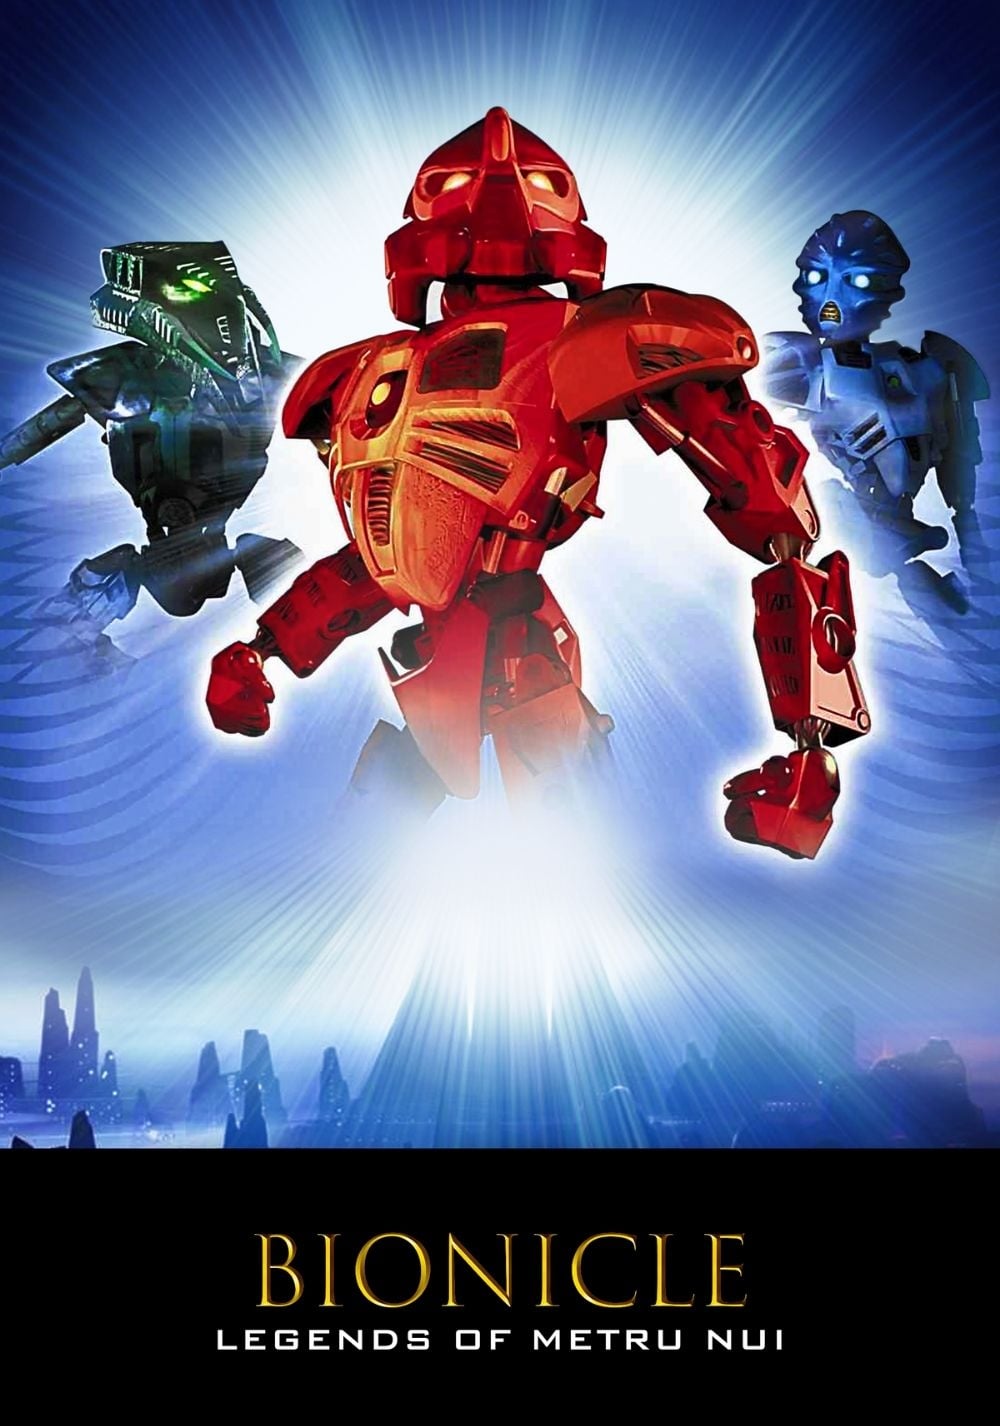 Bionicle La Máscara de la Luz Película. Donde Ver Streaming Online